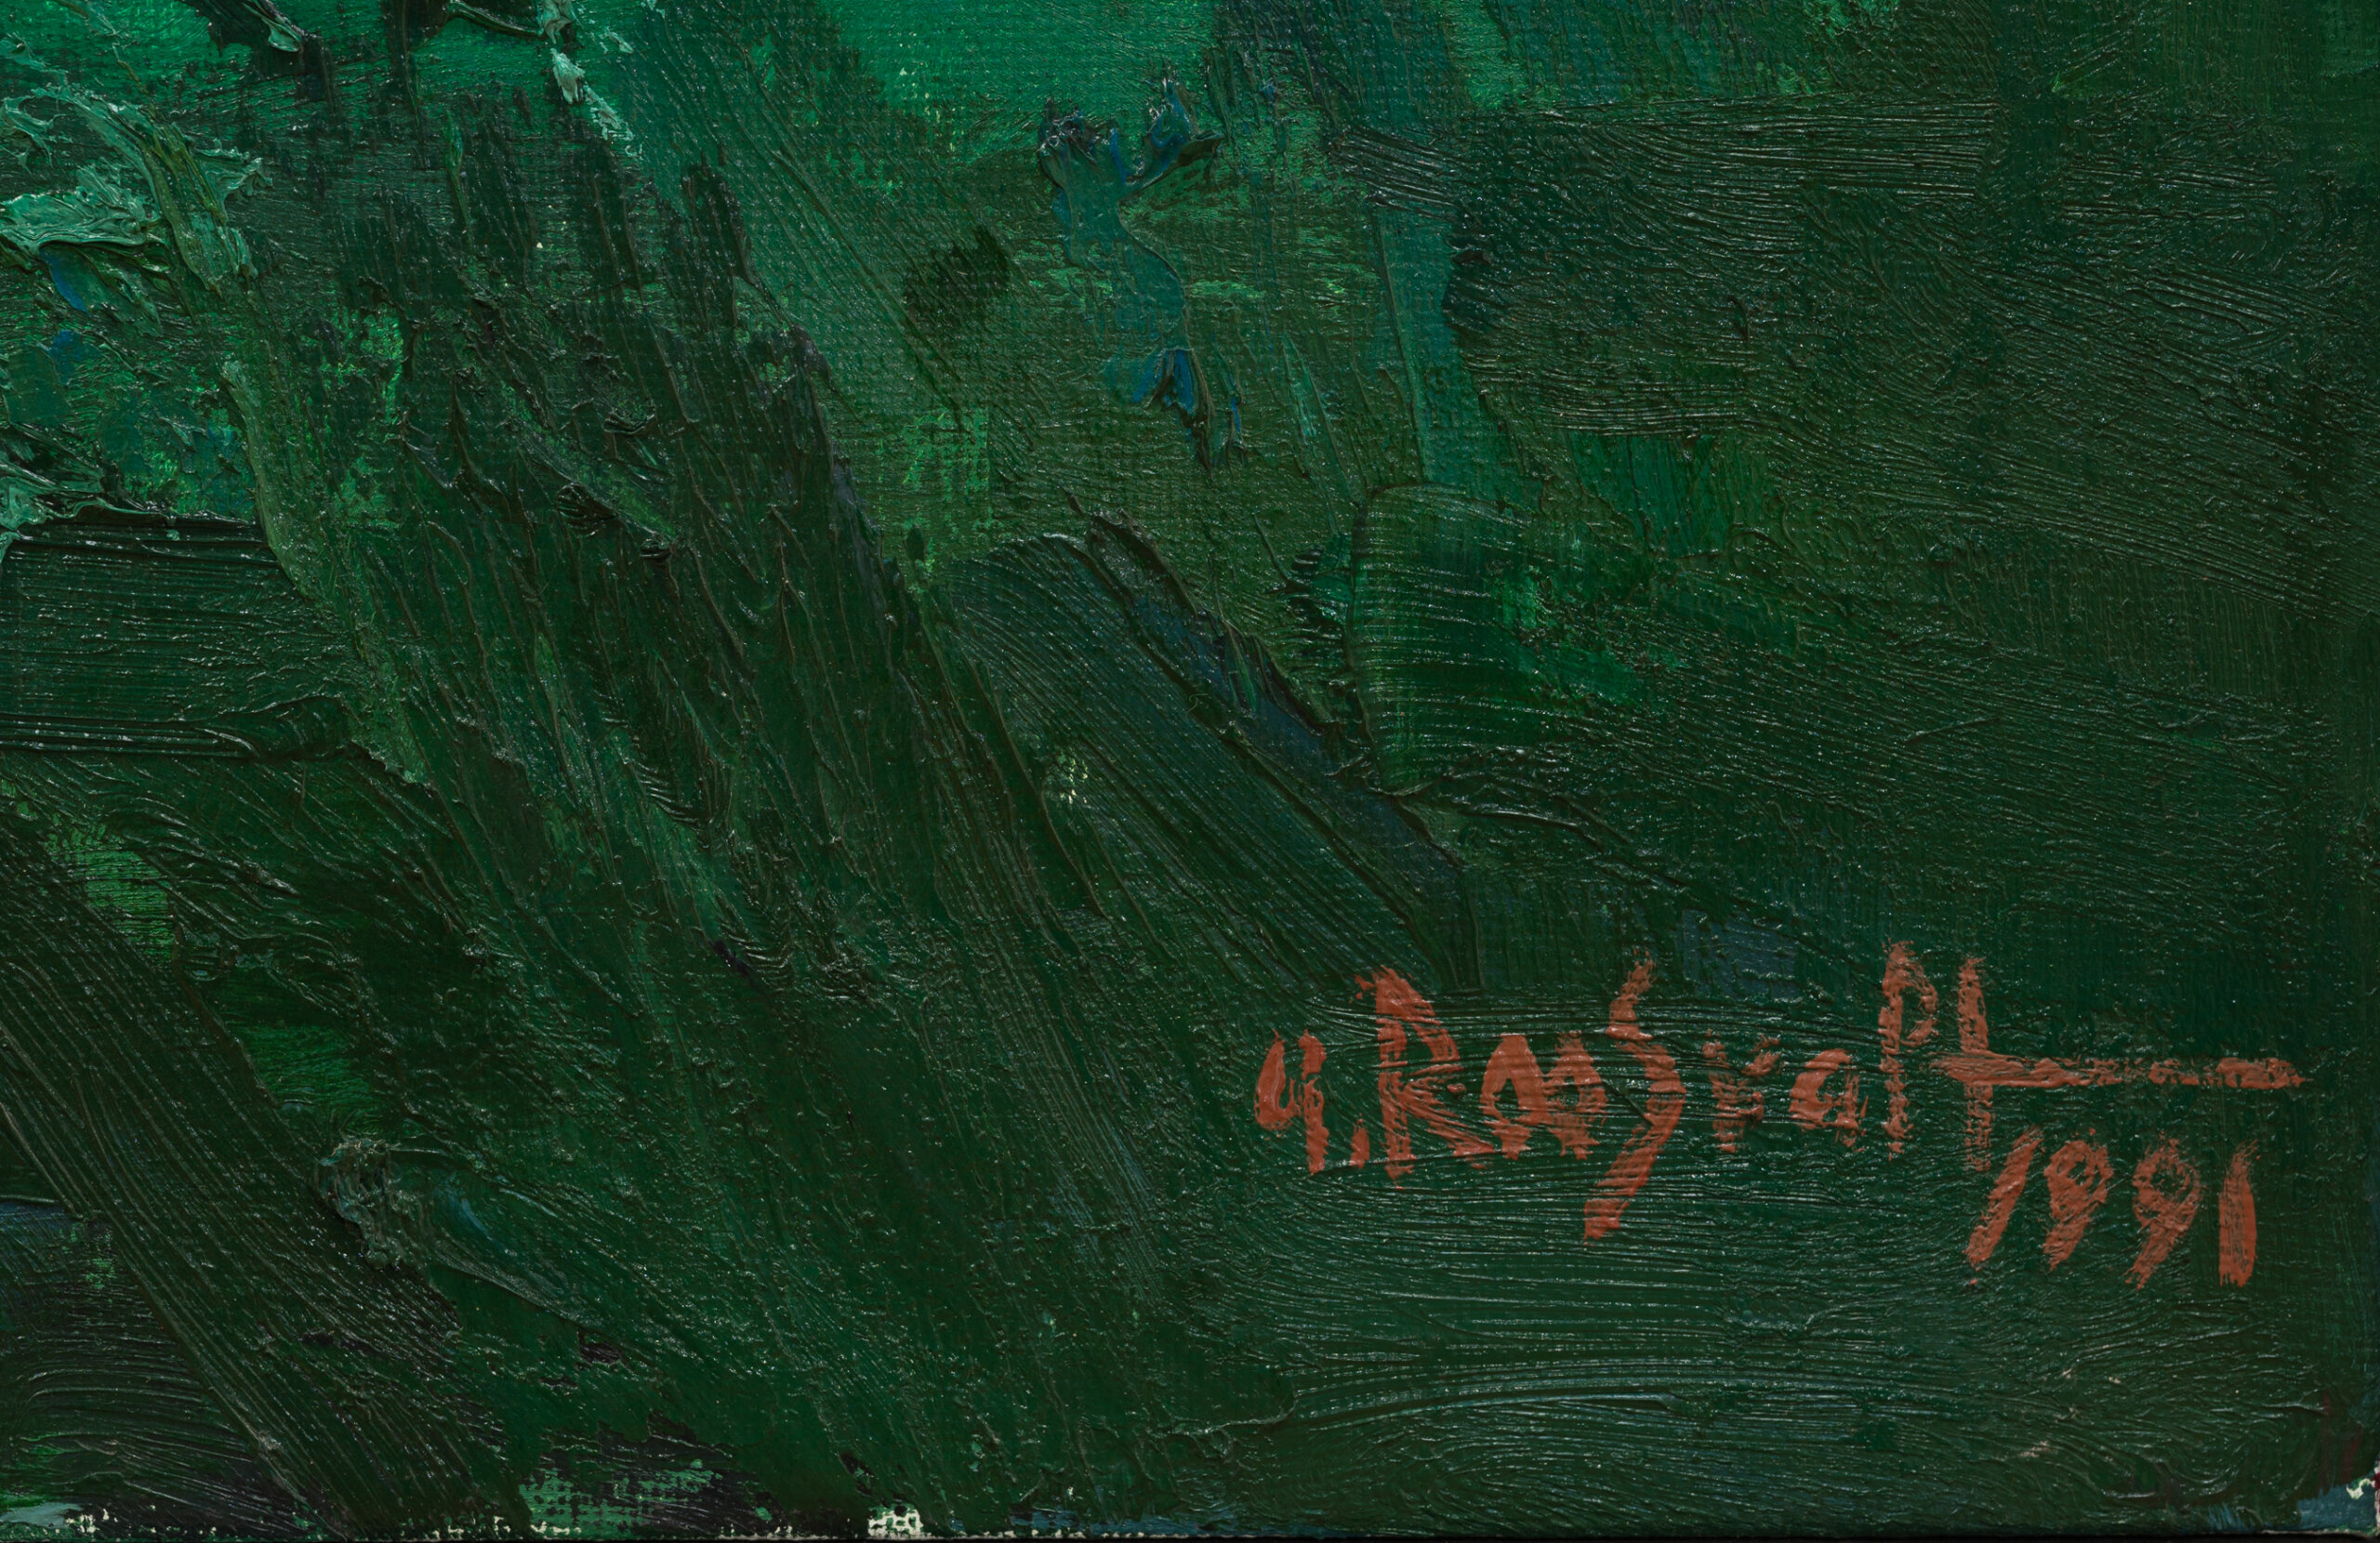 Uno Roosvalt “Talu saarel”, 1991. 130 x 150 cm.